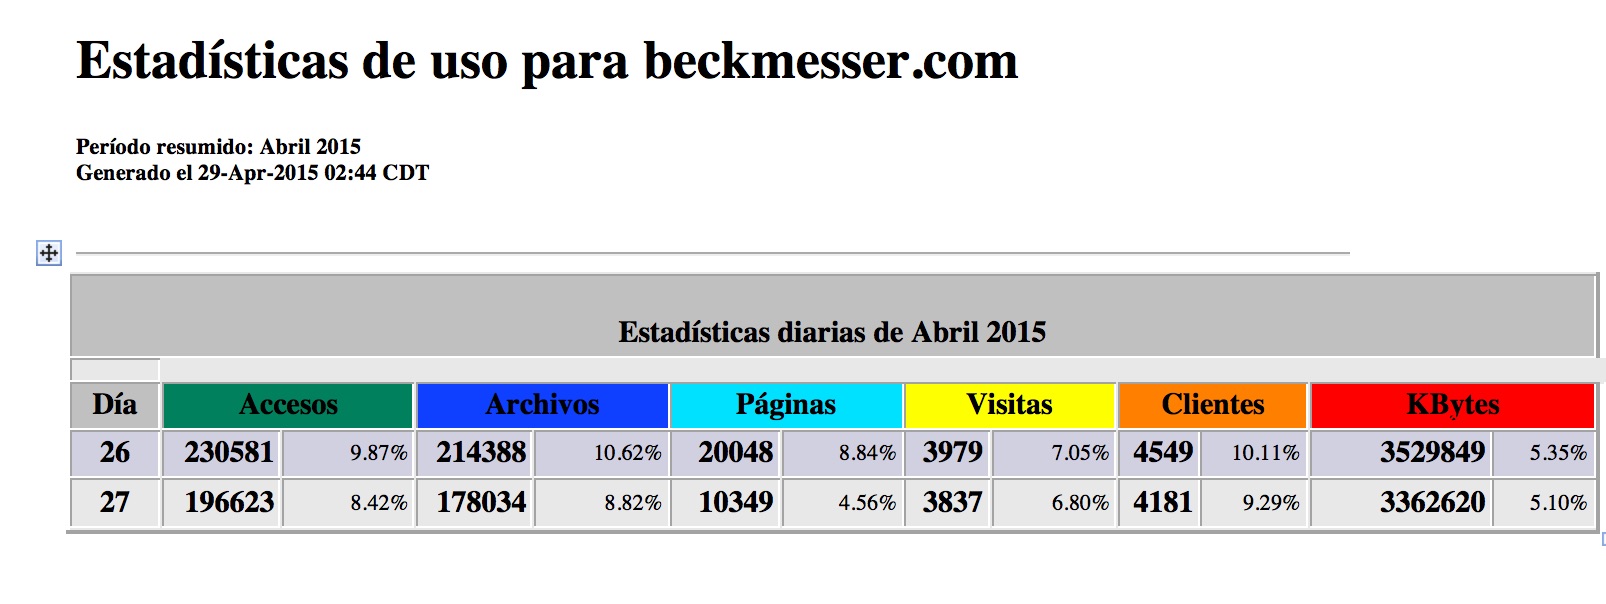 Estadísticas de uso para beckmesser abril 2015